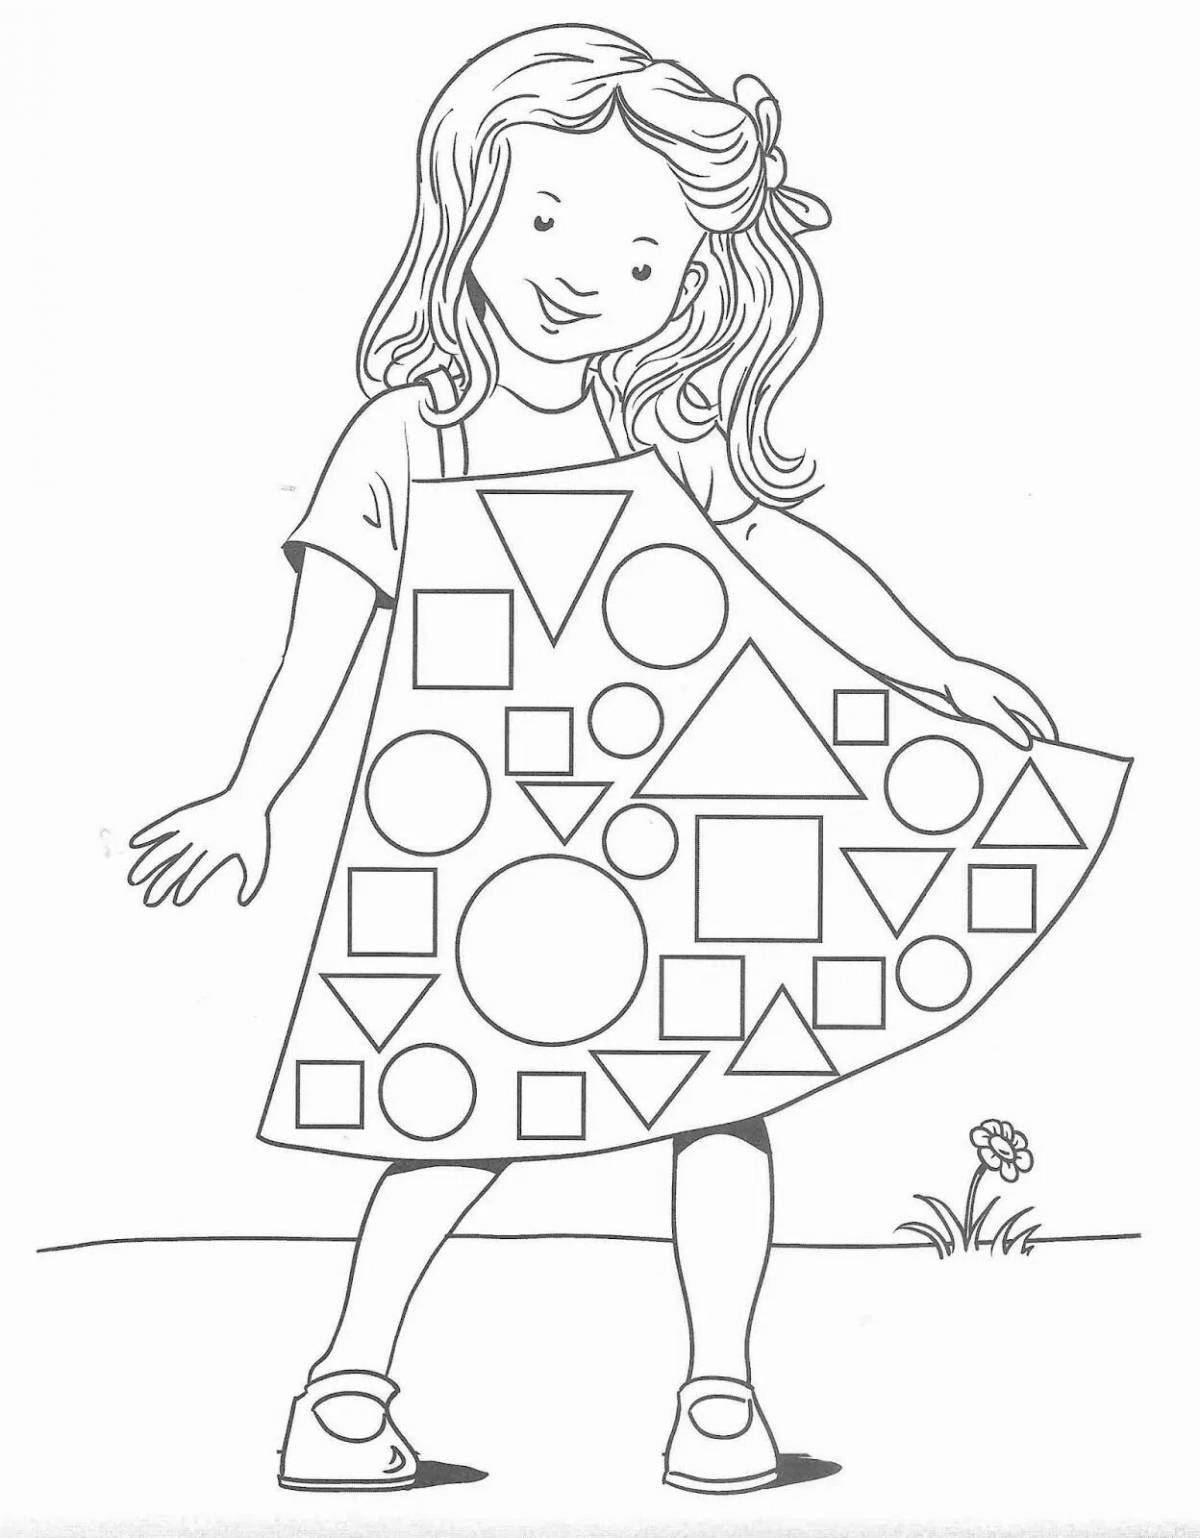 Рисование геометрическими фигурами развивает у ребенка умение точно и аккуратно передать свои мысли и эмоции на бумаге.